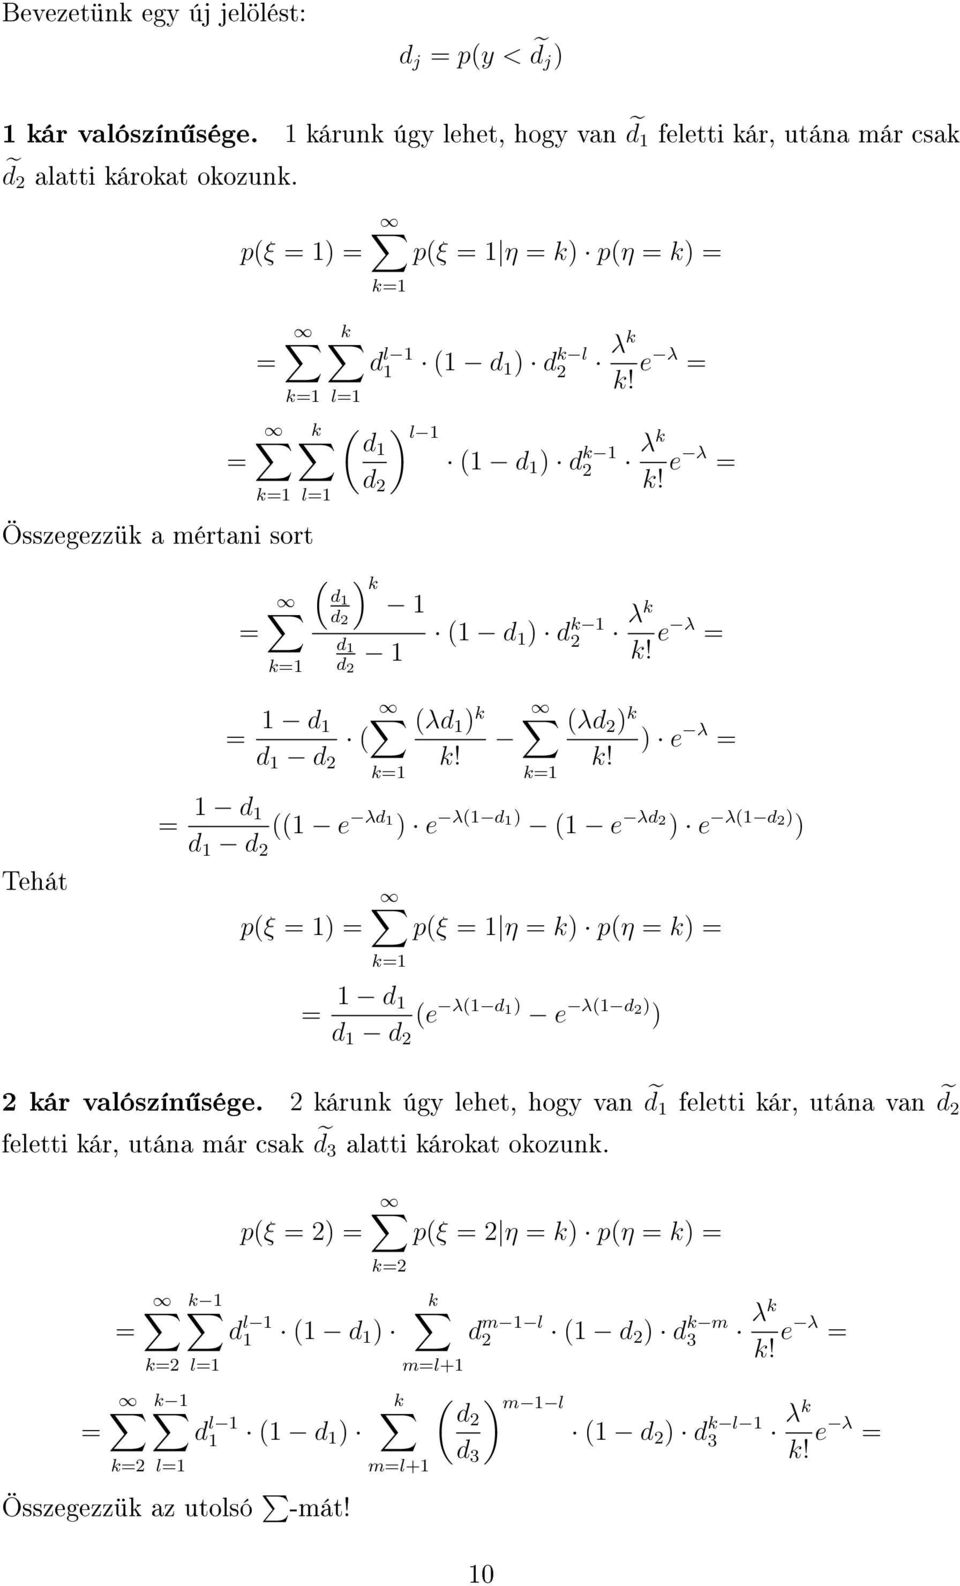 eλ λd k e λ k! k1 Tehát 1 d 1 d 1 d 1 e λd 1 e λ1d 1 1 e λd e λ1d pξ 1 pξ 1 η k pη k k1 1 d 1 d 1 d e λ1d 1 e λ1d kár valószín sége.